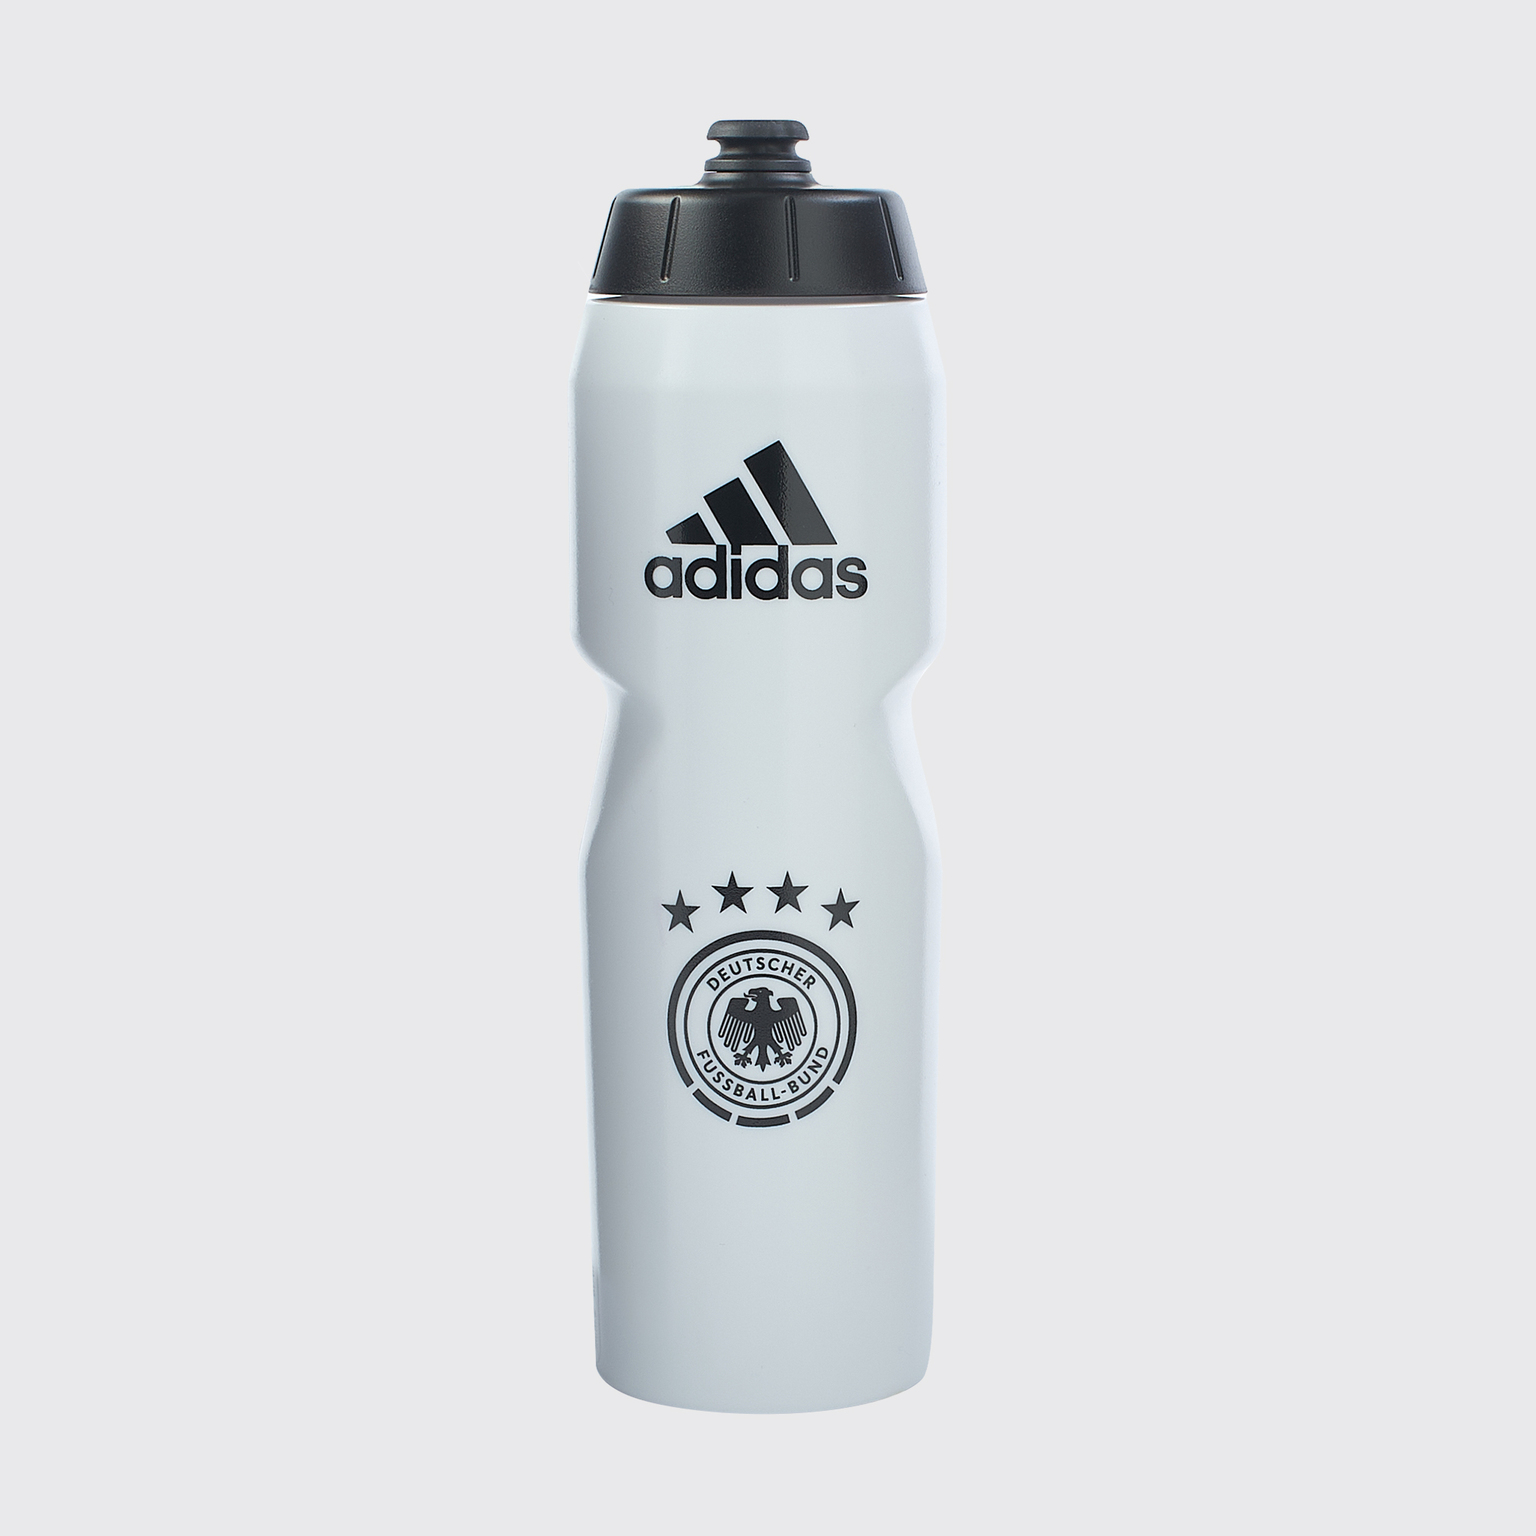 Бутылка для воды Adidas сборной Германии FJ0819